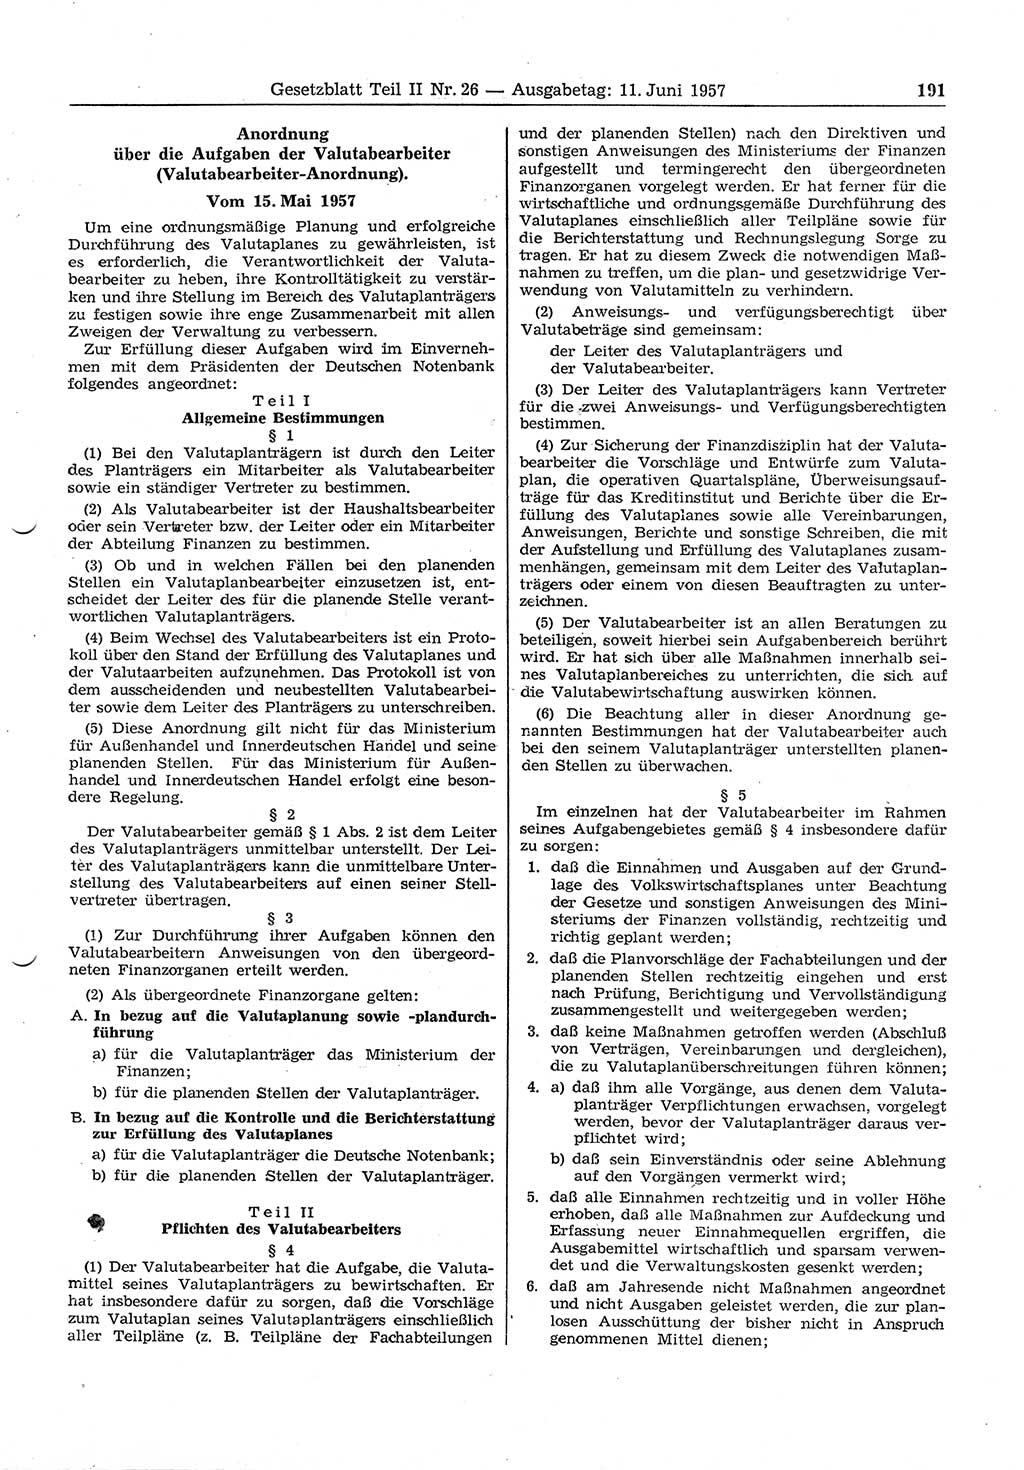 Gesetzblatt (GBl.) der Deutschen Demokratischen Republik (DDR) Teil ⅠⅠ 1957, Seite 191 (GBl. DDR ⅠⅠ 1957, S. 191)